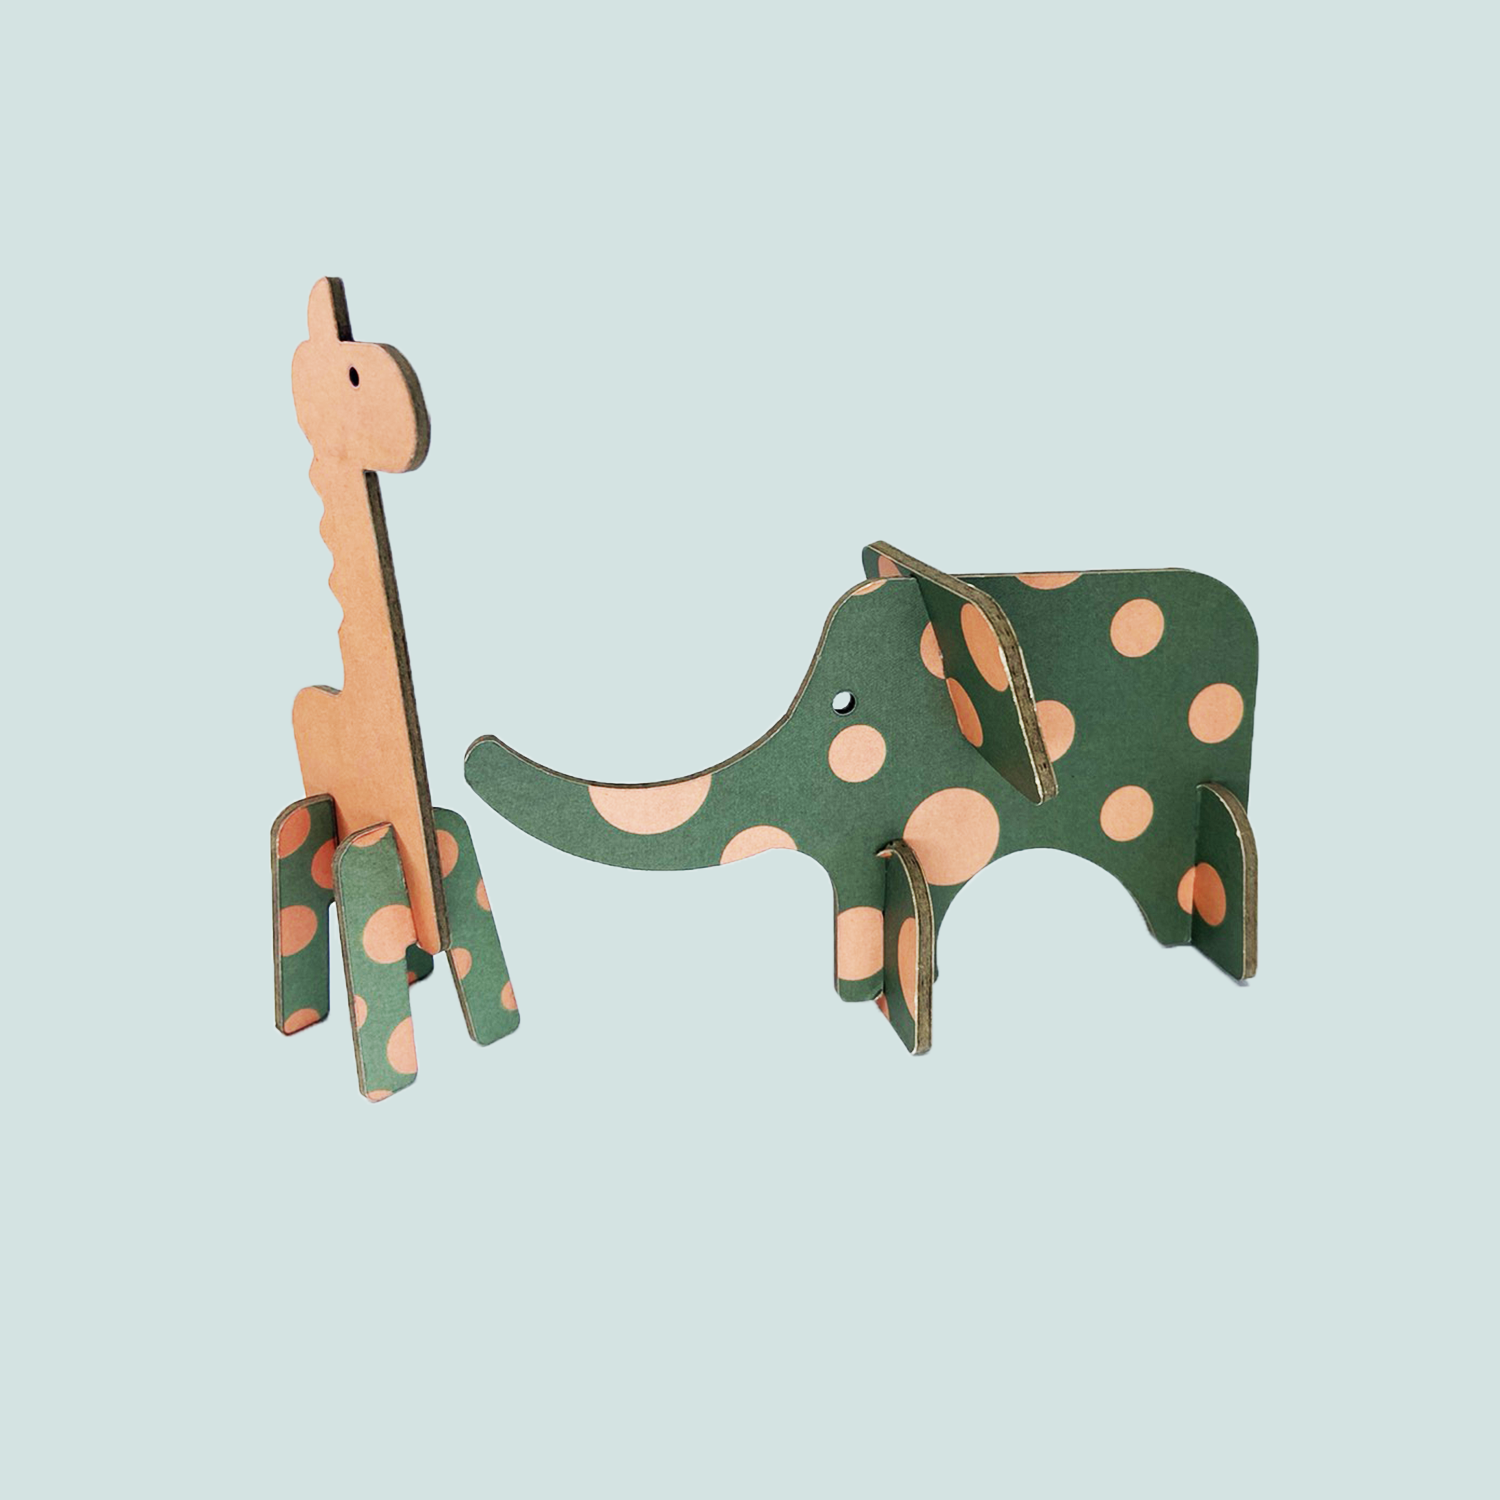 Little giraffe and elephant